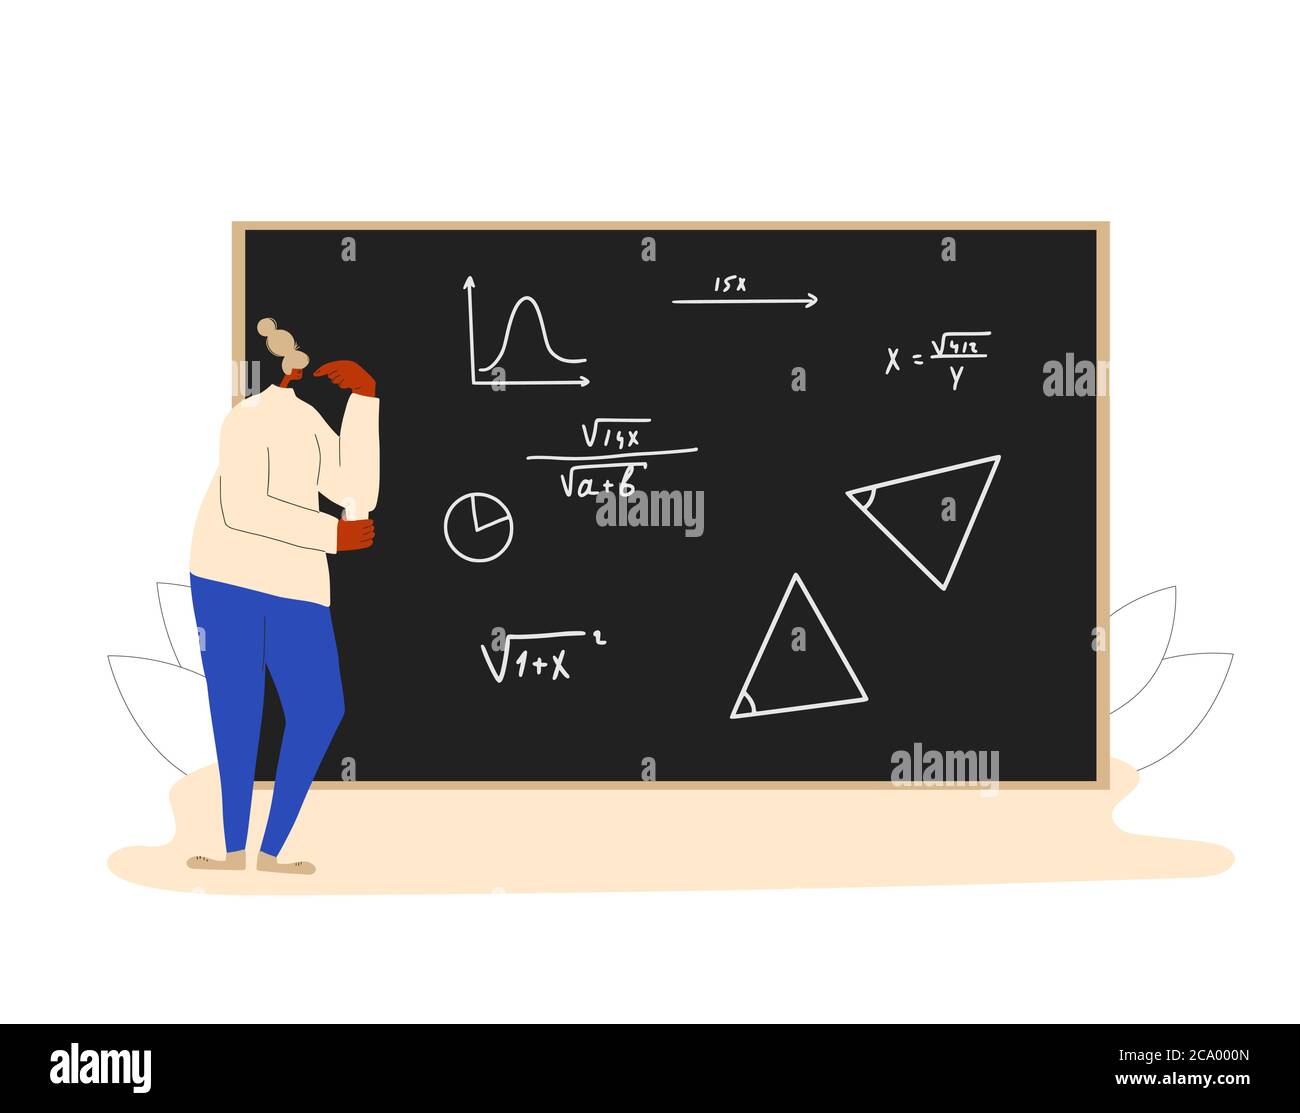 Studente in processo di apprendimento. Matematica. Immagine piatta vettoriale. Illustrazione Vettoriale